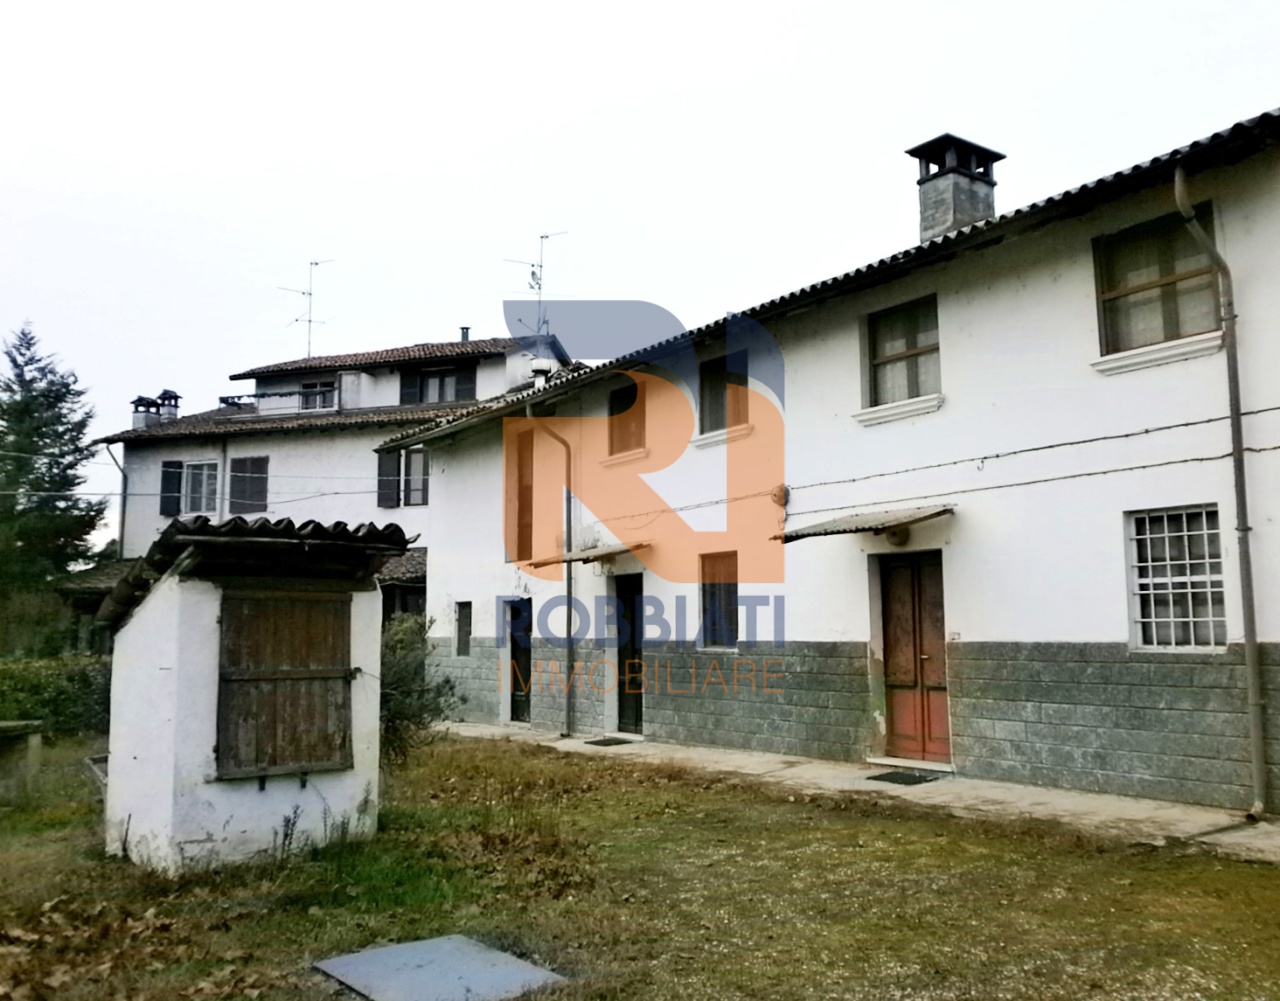 Villa a Schiera in vendita a Zinasco, 2 locali, prezzo € 25.000 | PortaleAgenzieImmobiliari.it